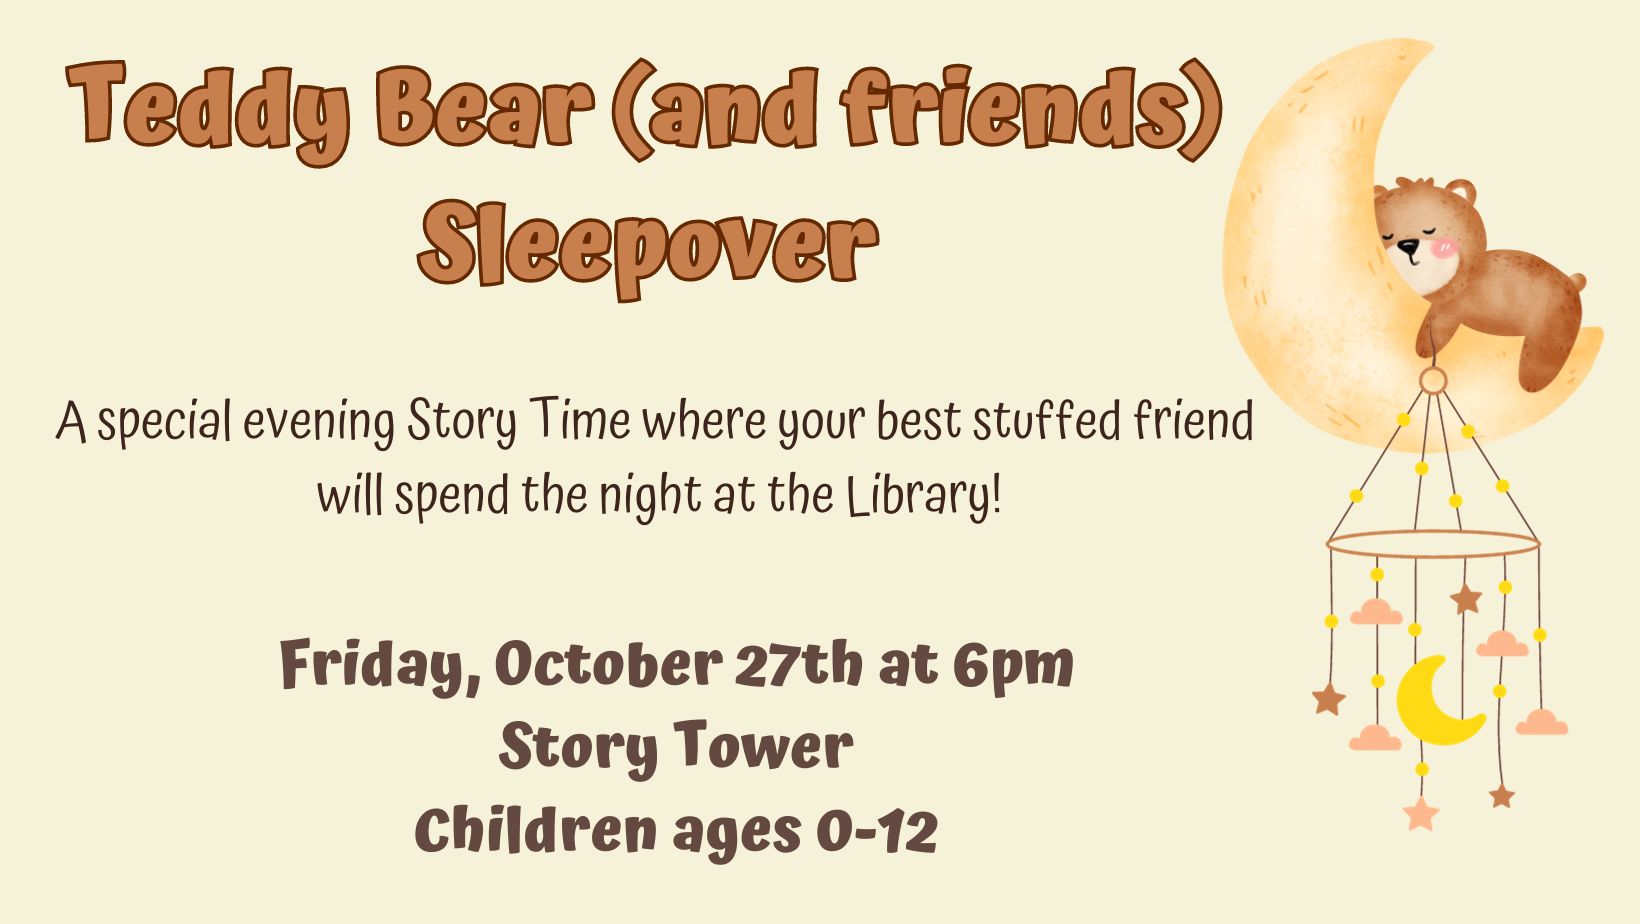 Teddy Bear and Stuffed Friends Sleepover 